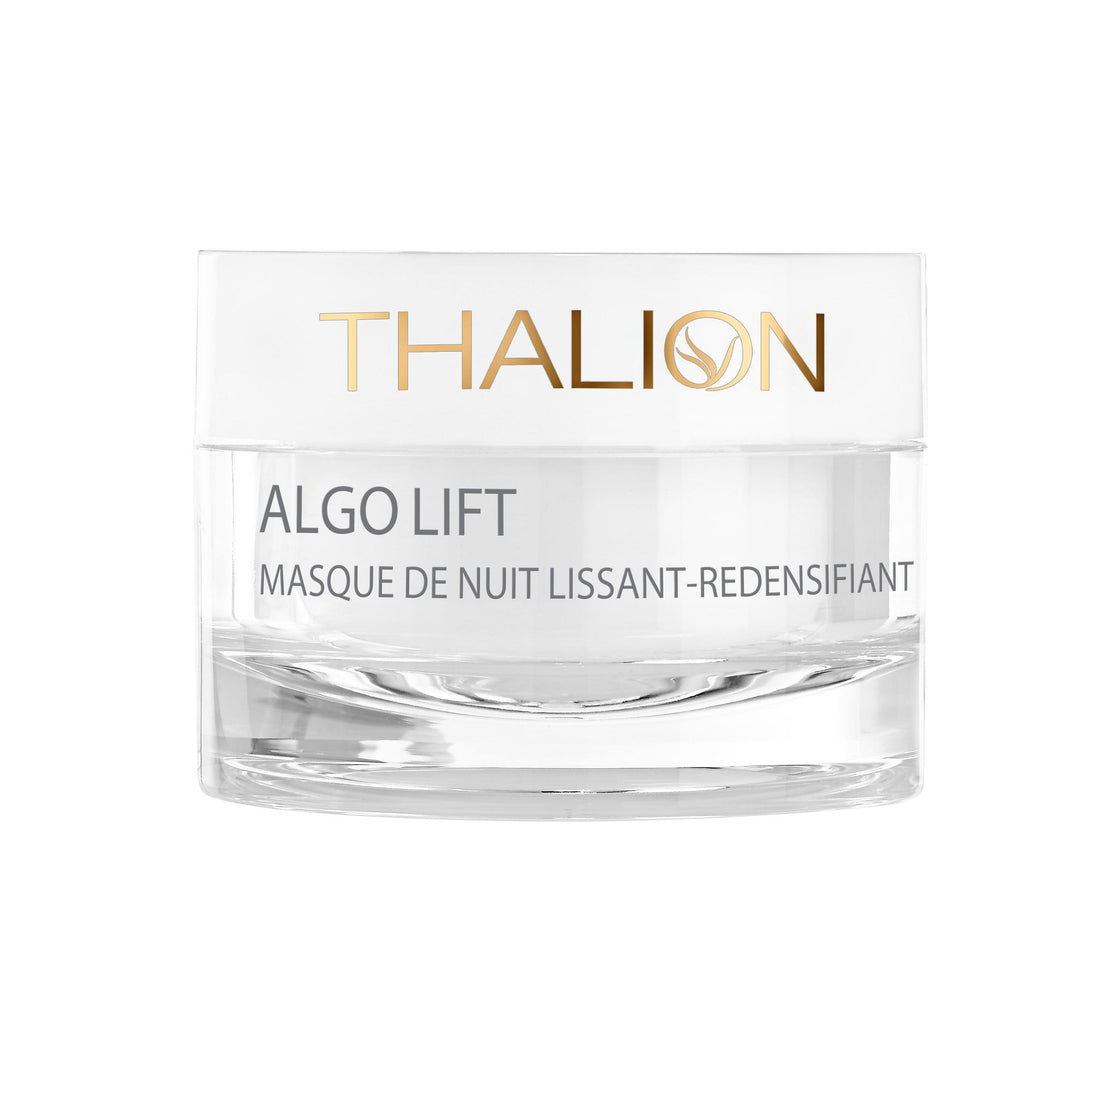 THALION - Algo Lift - Masque de nuit redensifiant lissant